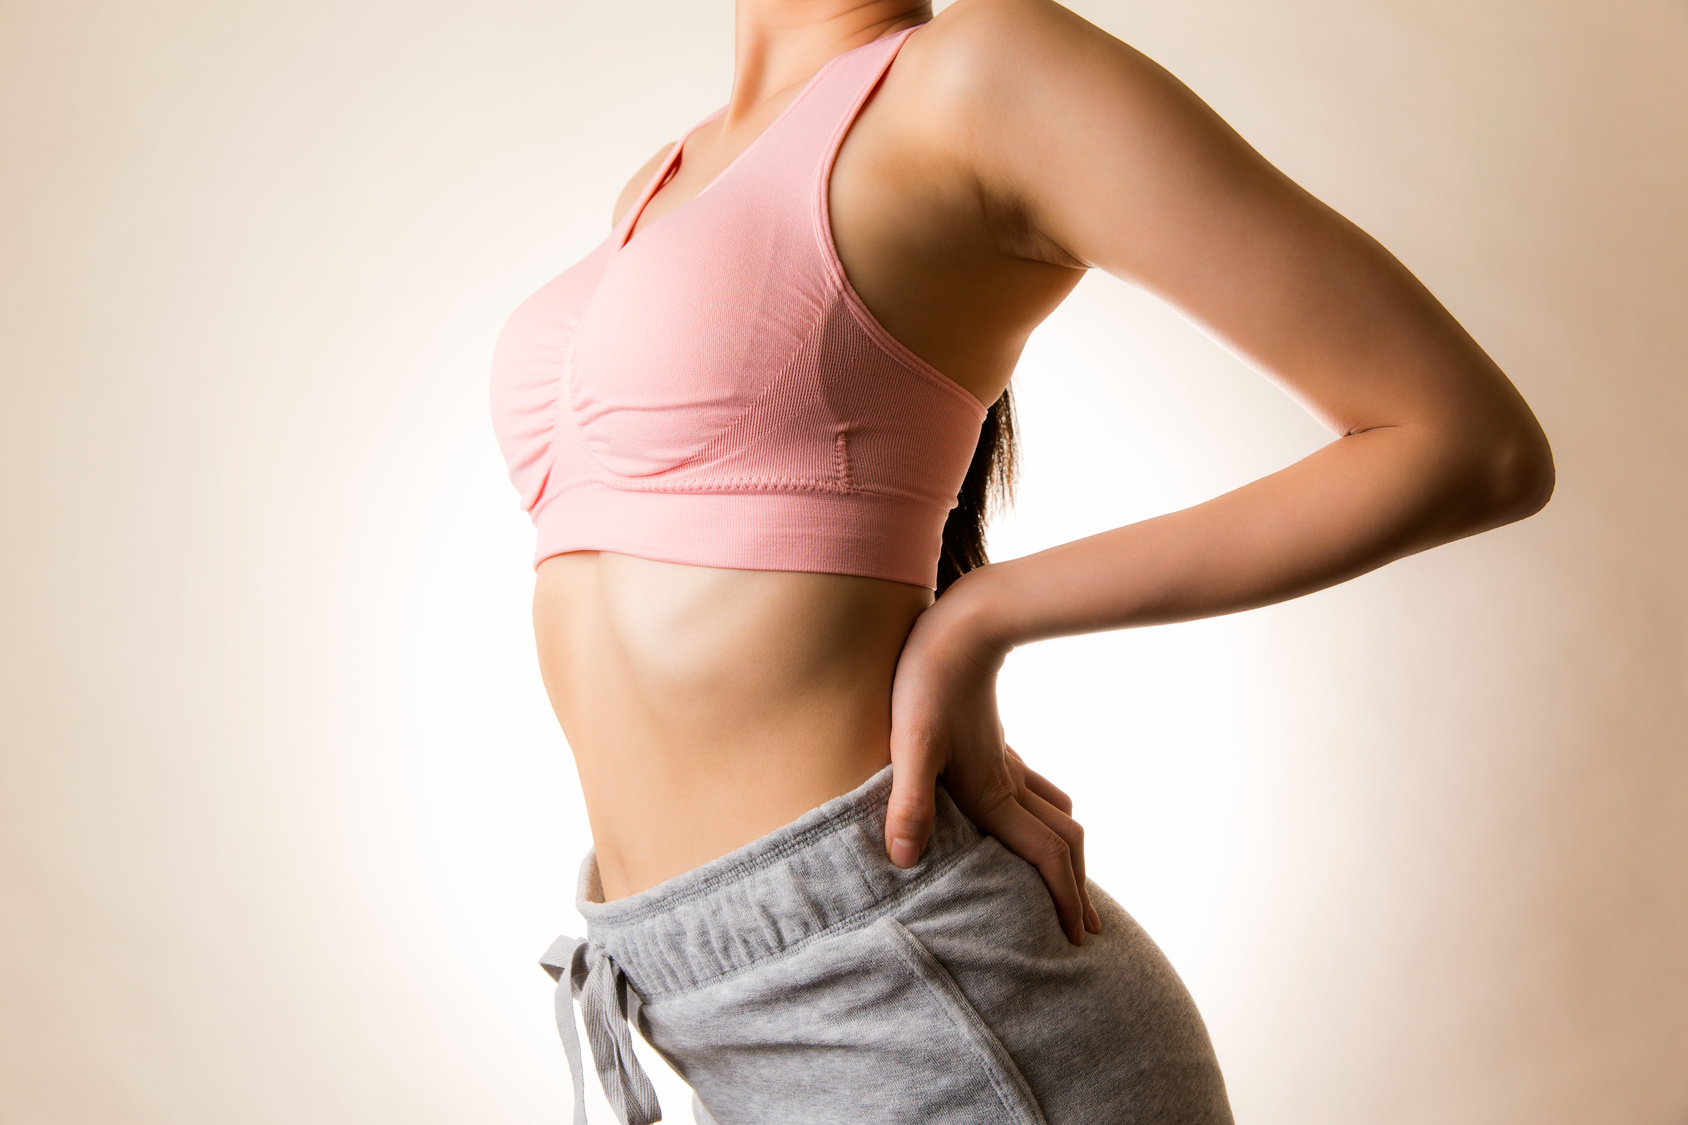 腹筋ローラーで女性らしい「くびれ」を作る効果的な使い方と注意点まとめ ダイエット魂